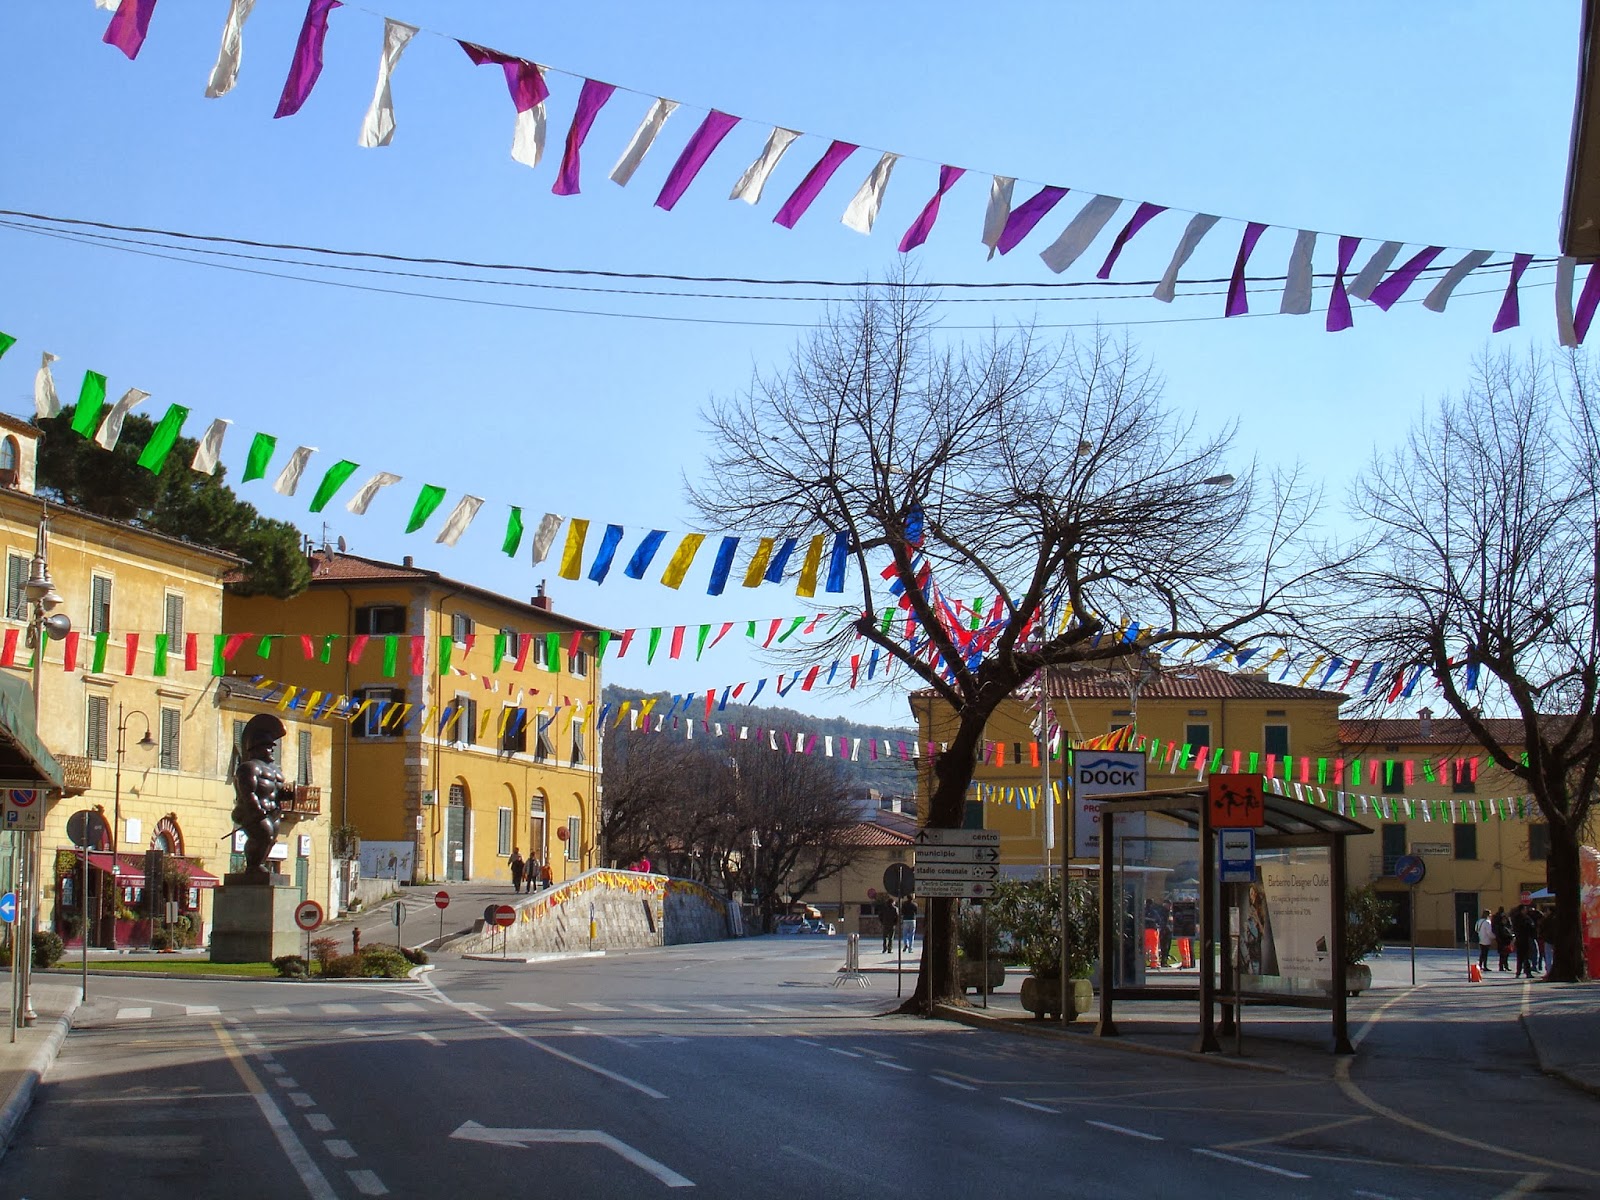 I dintorni di Viareggio: due borghi da visitare nelle sue vicinanze